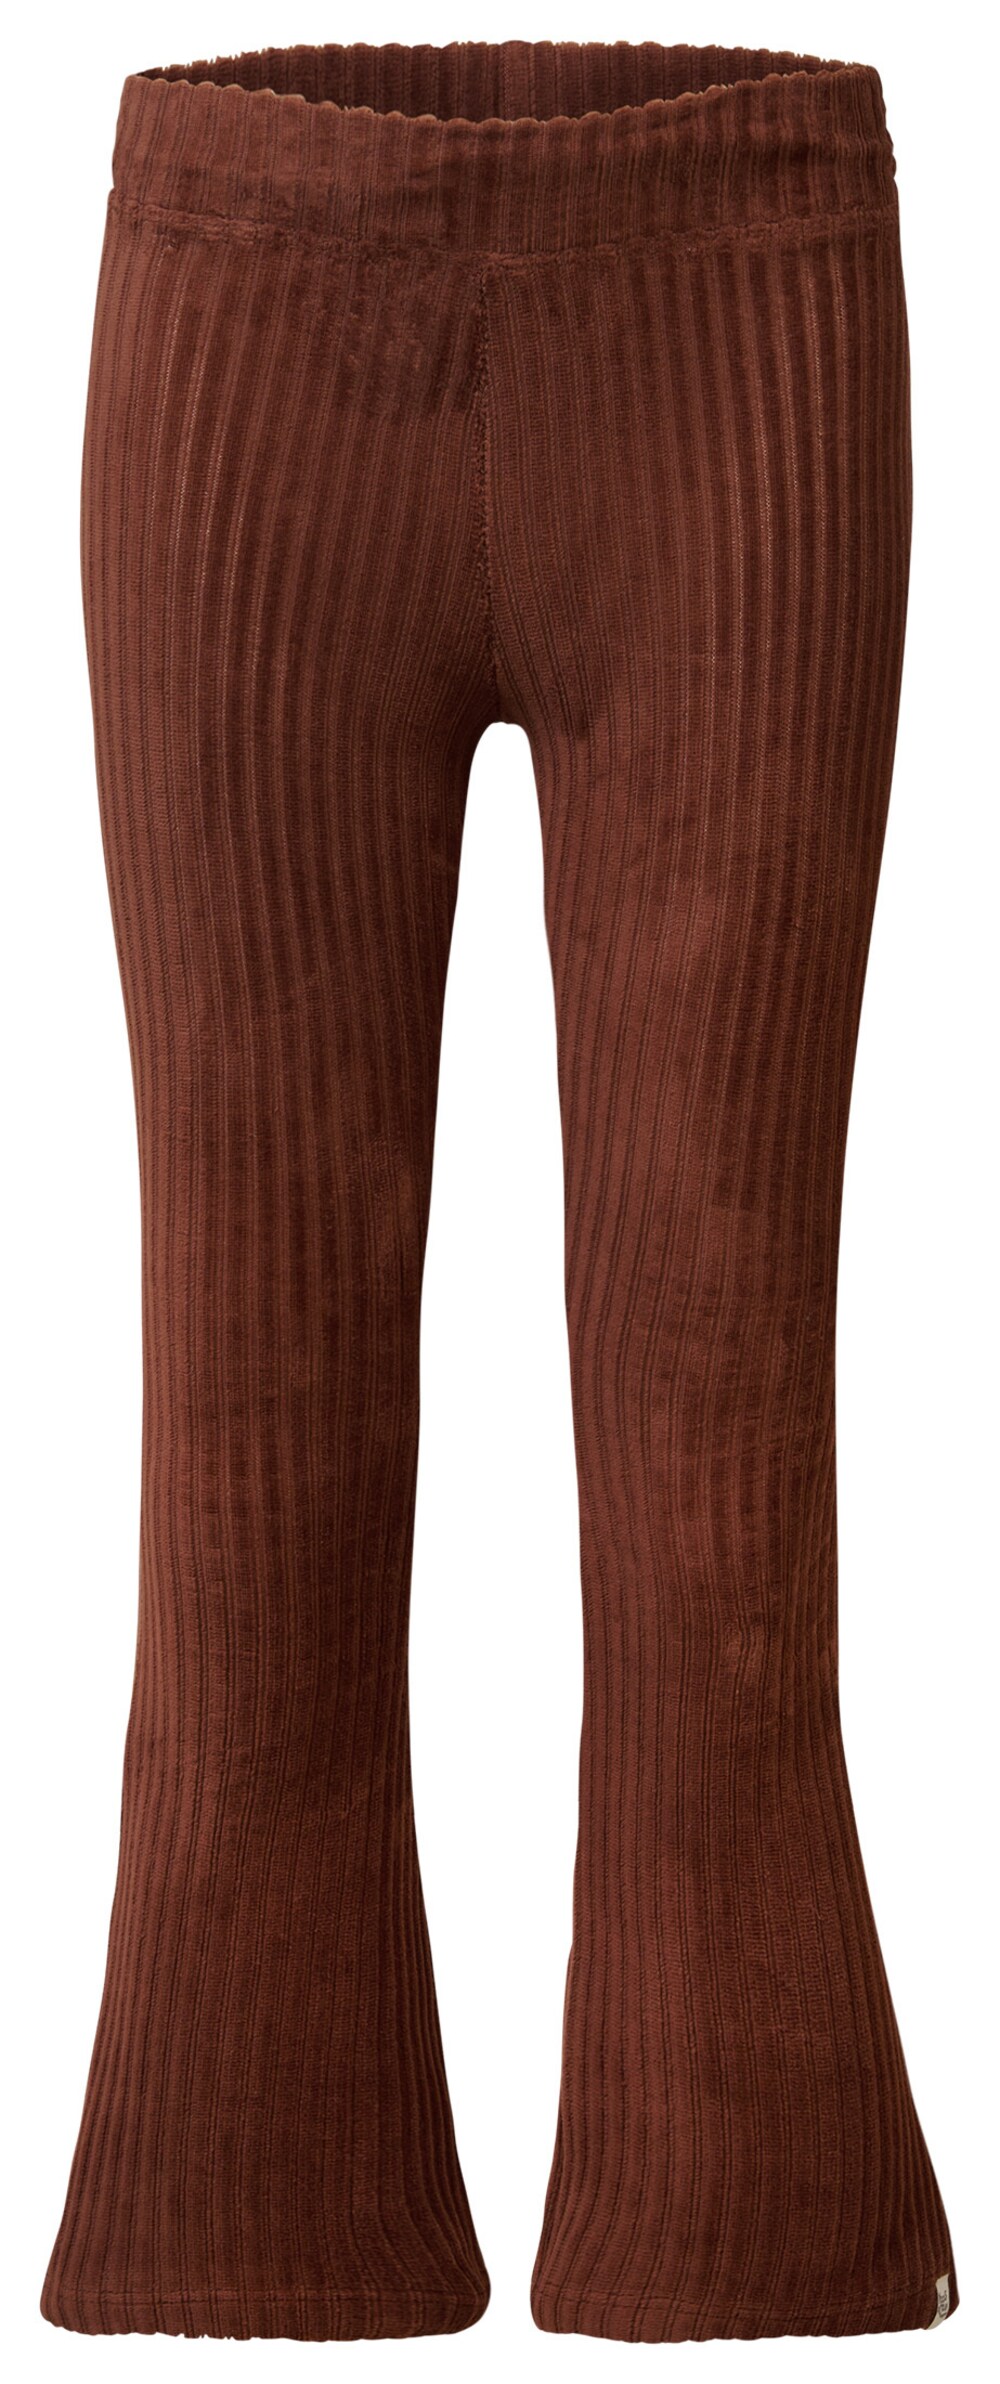 Расклешенные брюки Noppies Avondale, коричневый расклешенные брюки noppies смешанные цвета